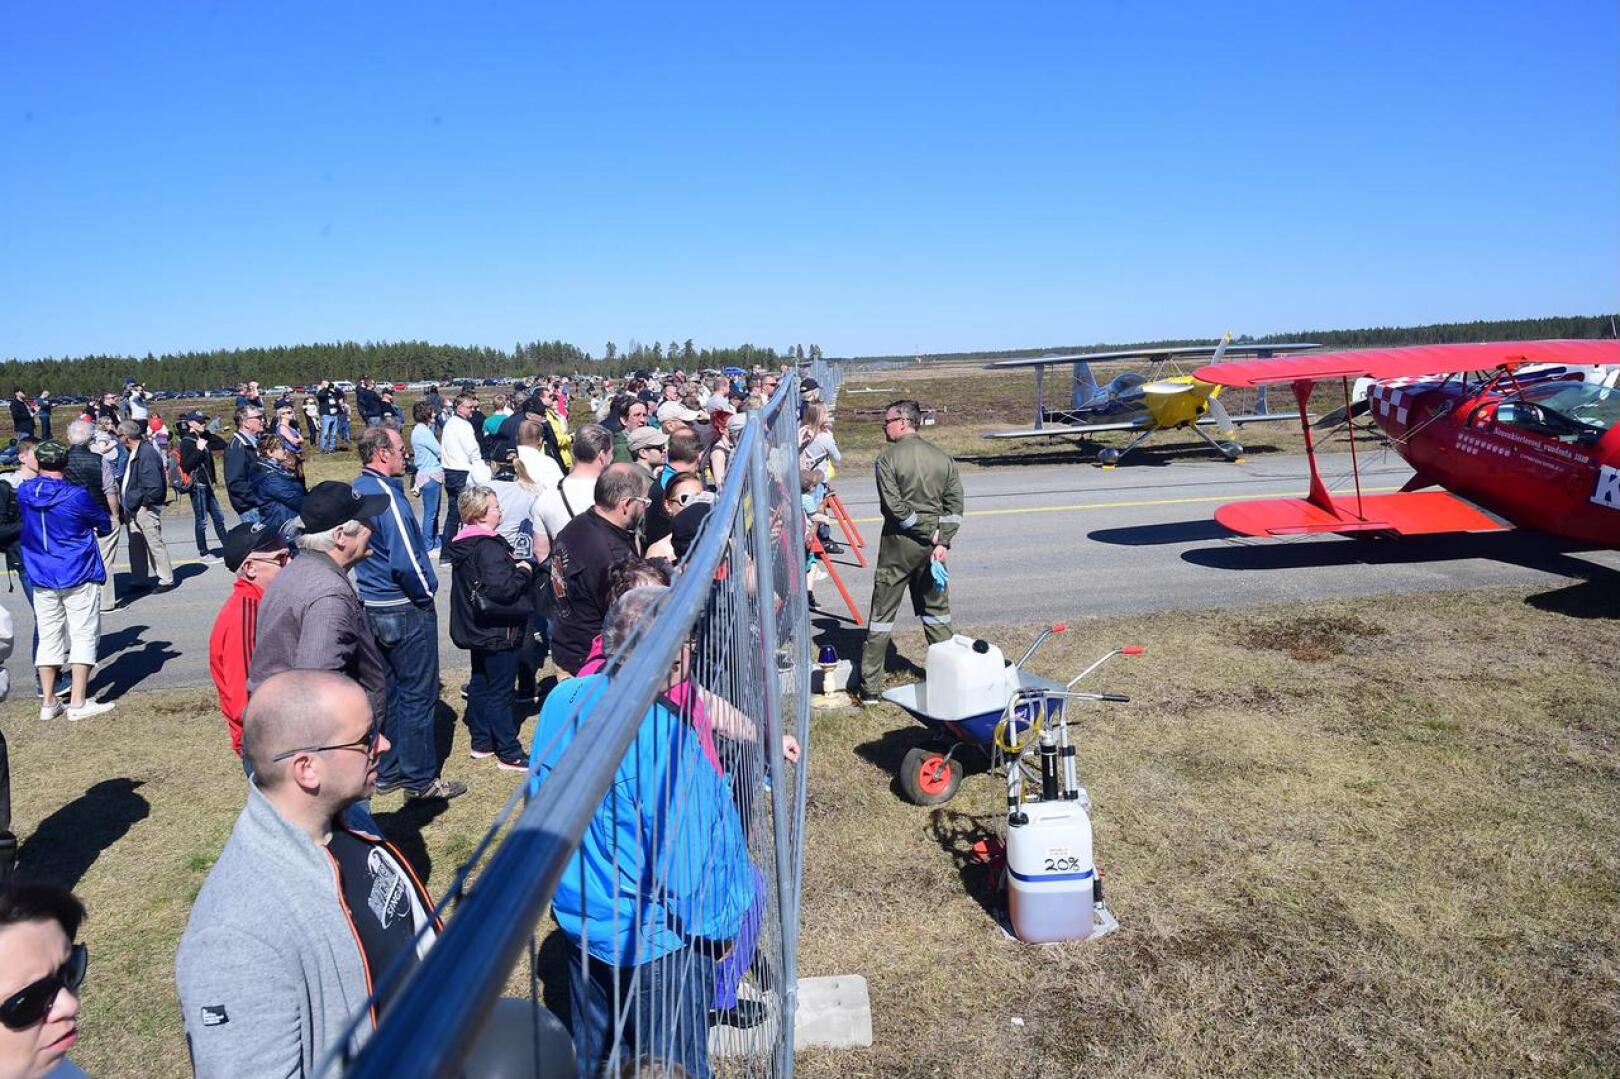 Runsaslukuinen yleisö on kerääntynyt katsomaan taitolentokoneiden nousua Kokkola-Pietarsaaren lentokentällä helatorstaina järjestettävässä ilmailupäivässä. 